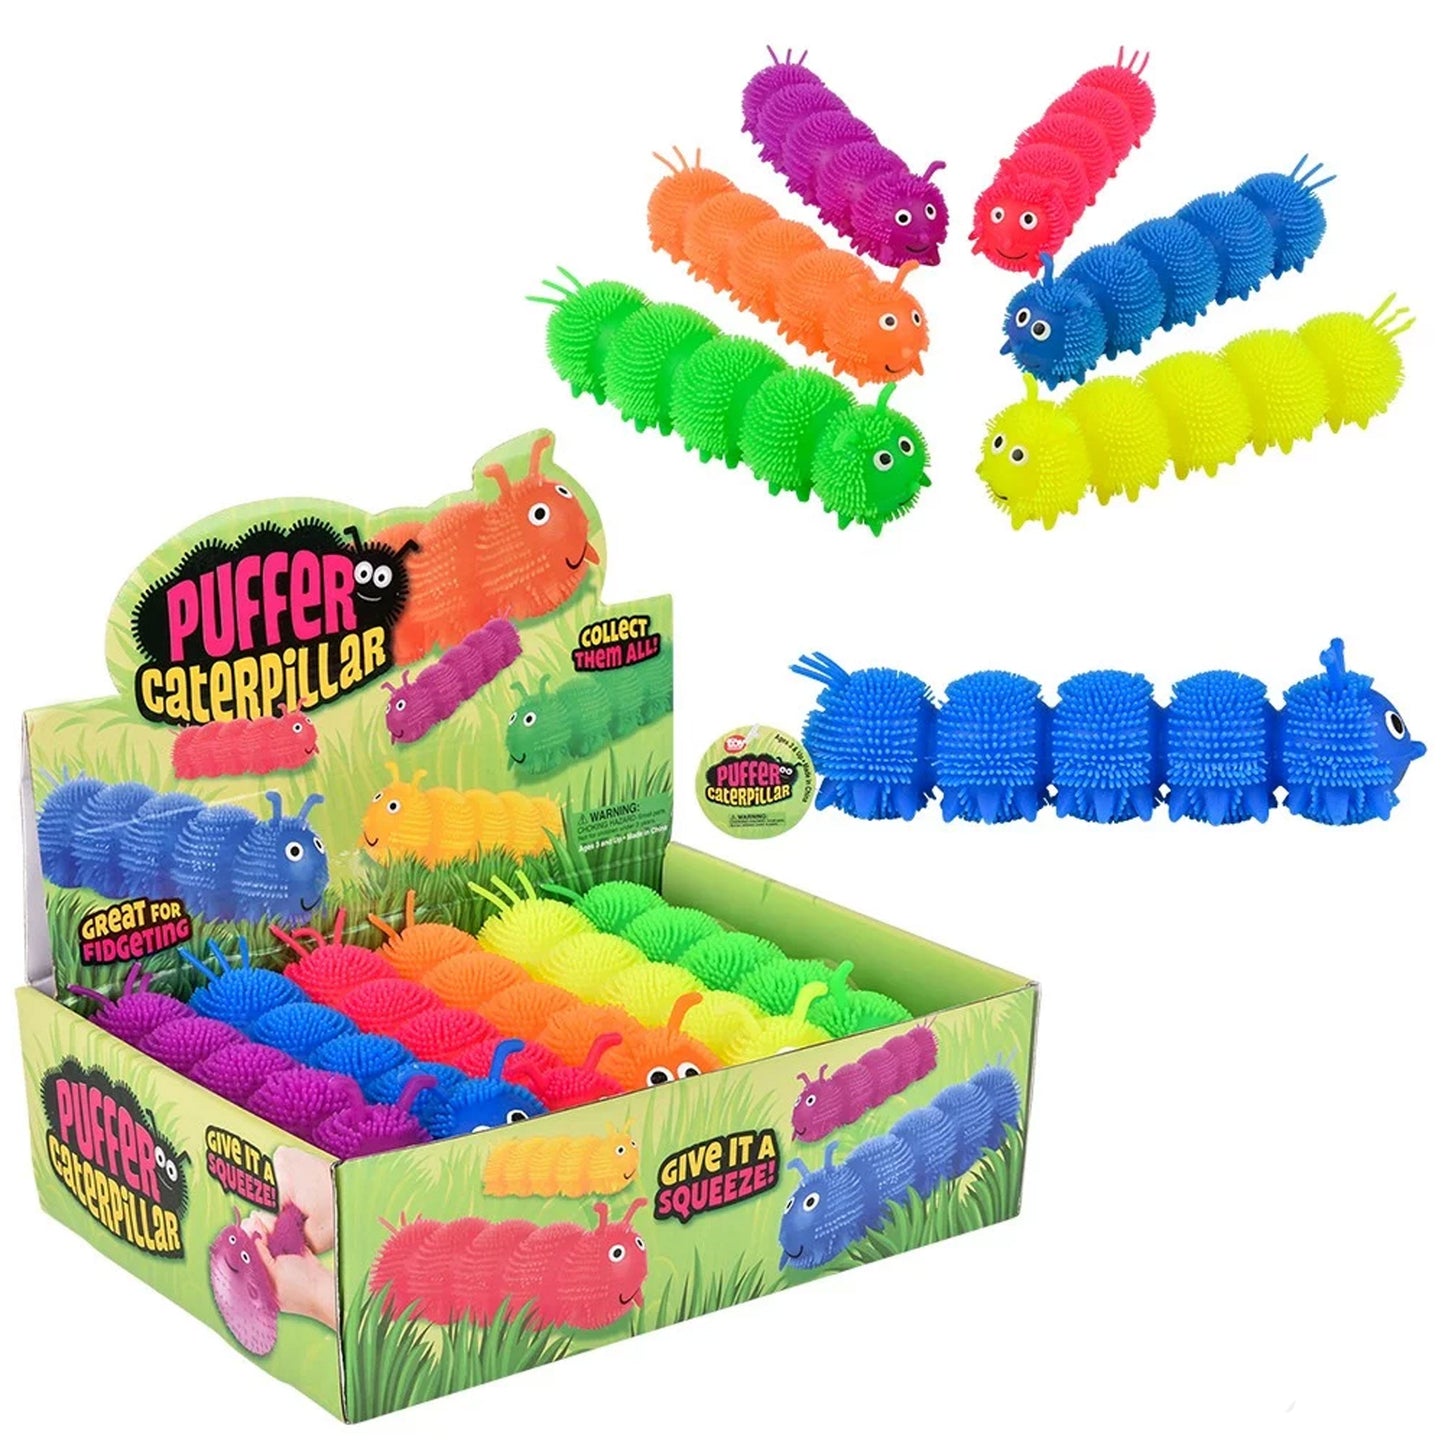 Soft Puffer caterpillar Toy